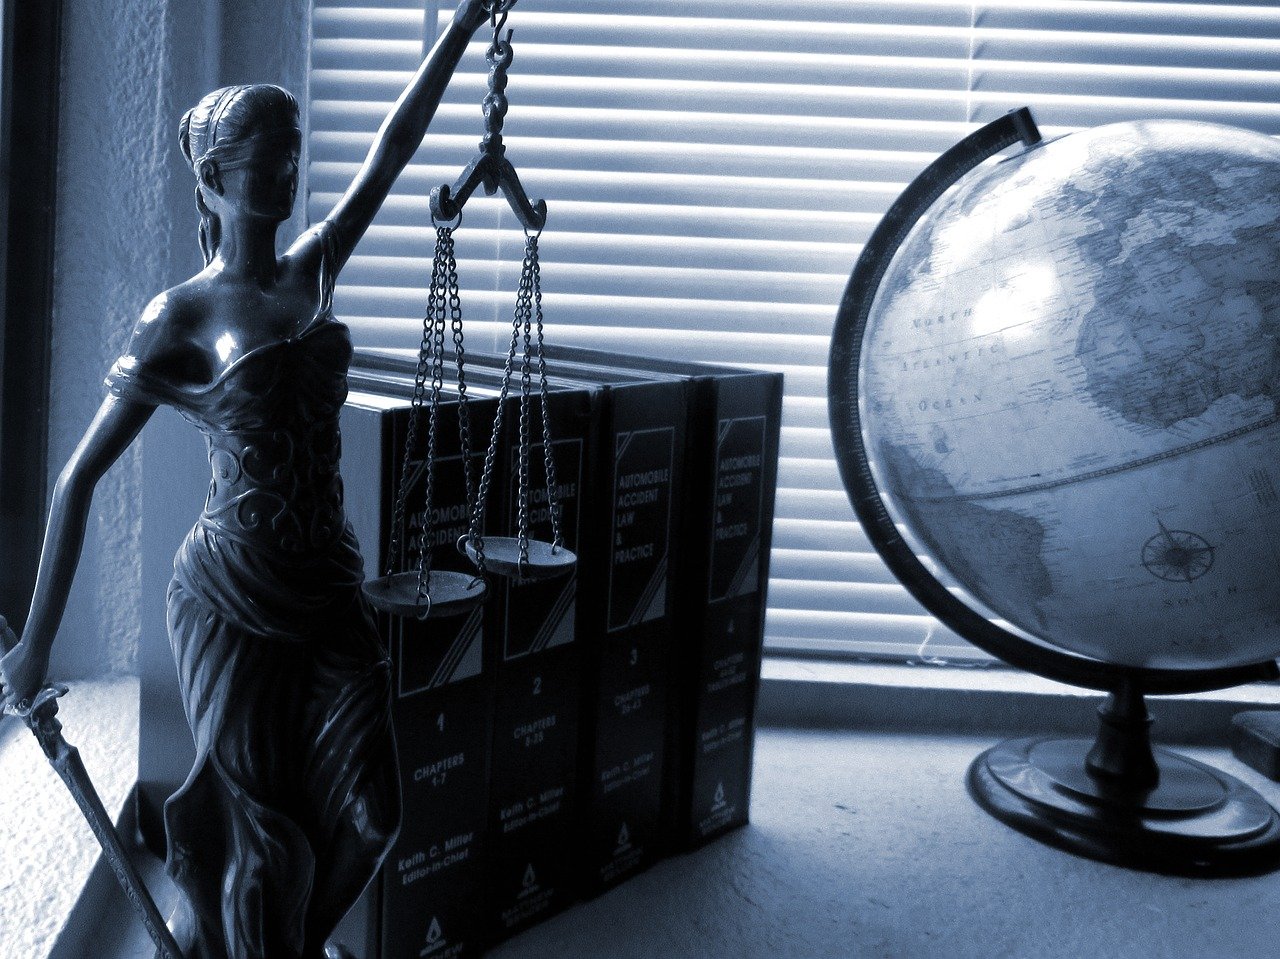 Onbeperkte vrije keuze van advocaat bij rechtsbijstand: revisited